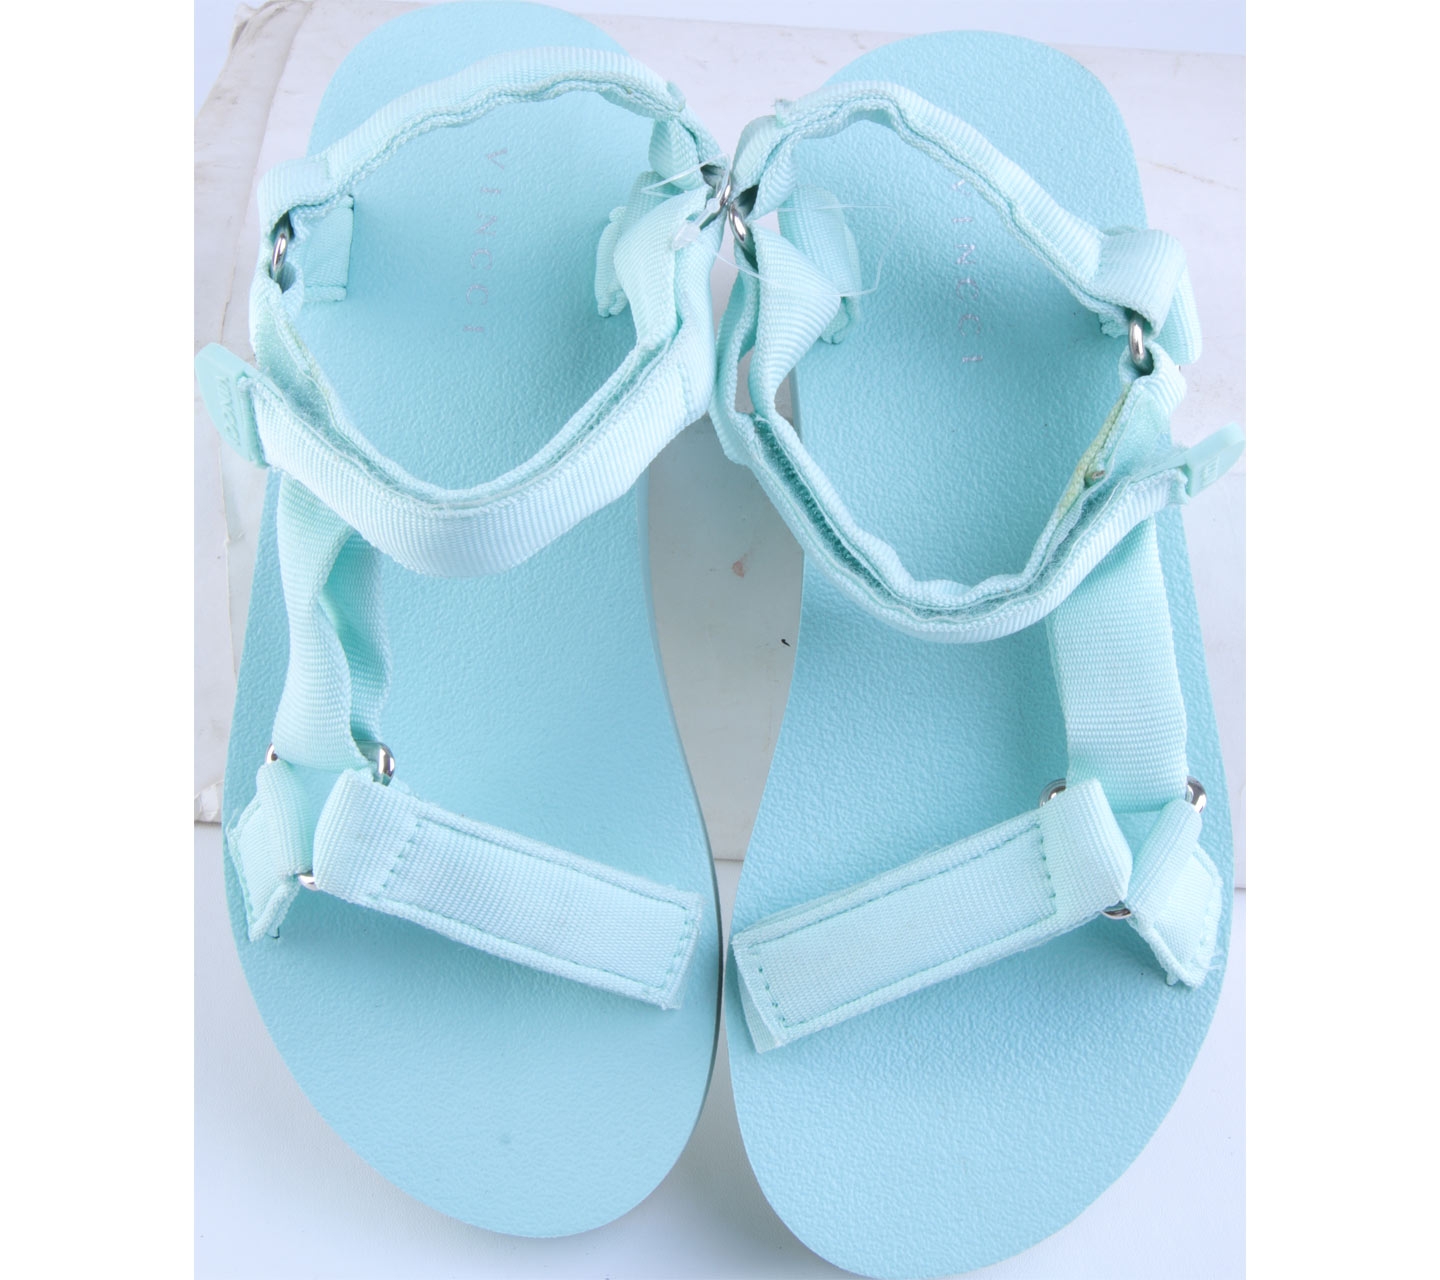 Vincci Turquoise Platform Strappy Sandals